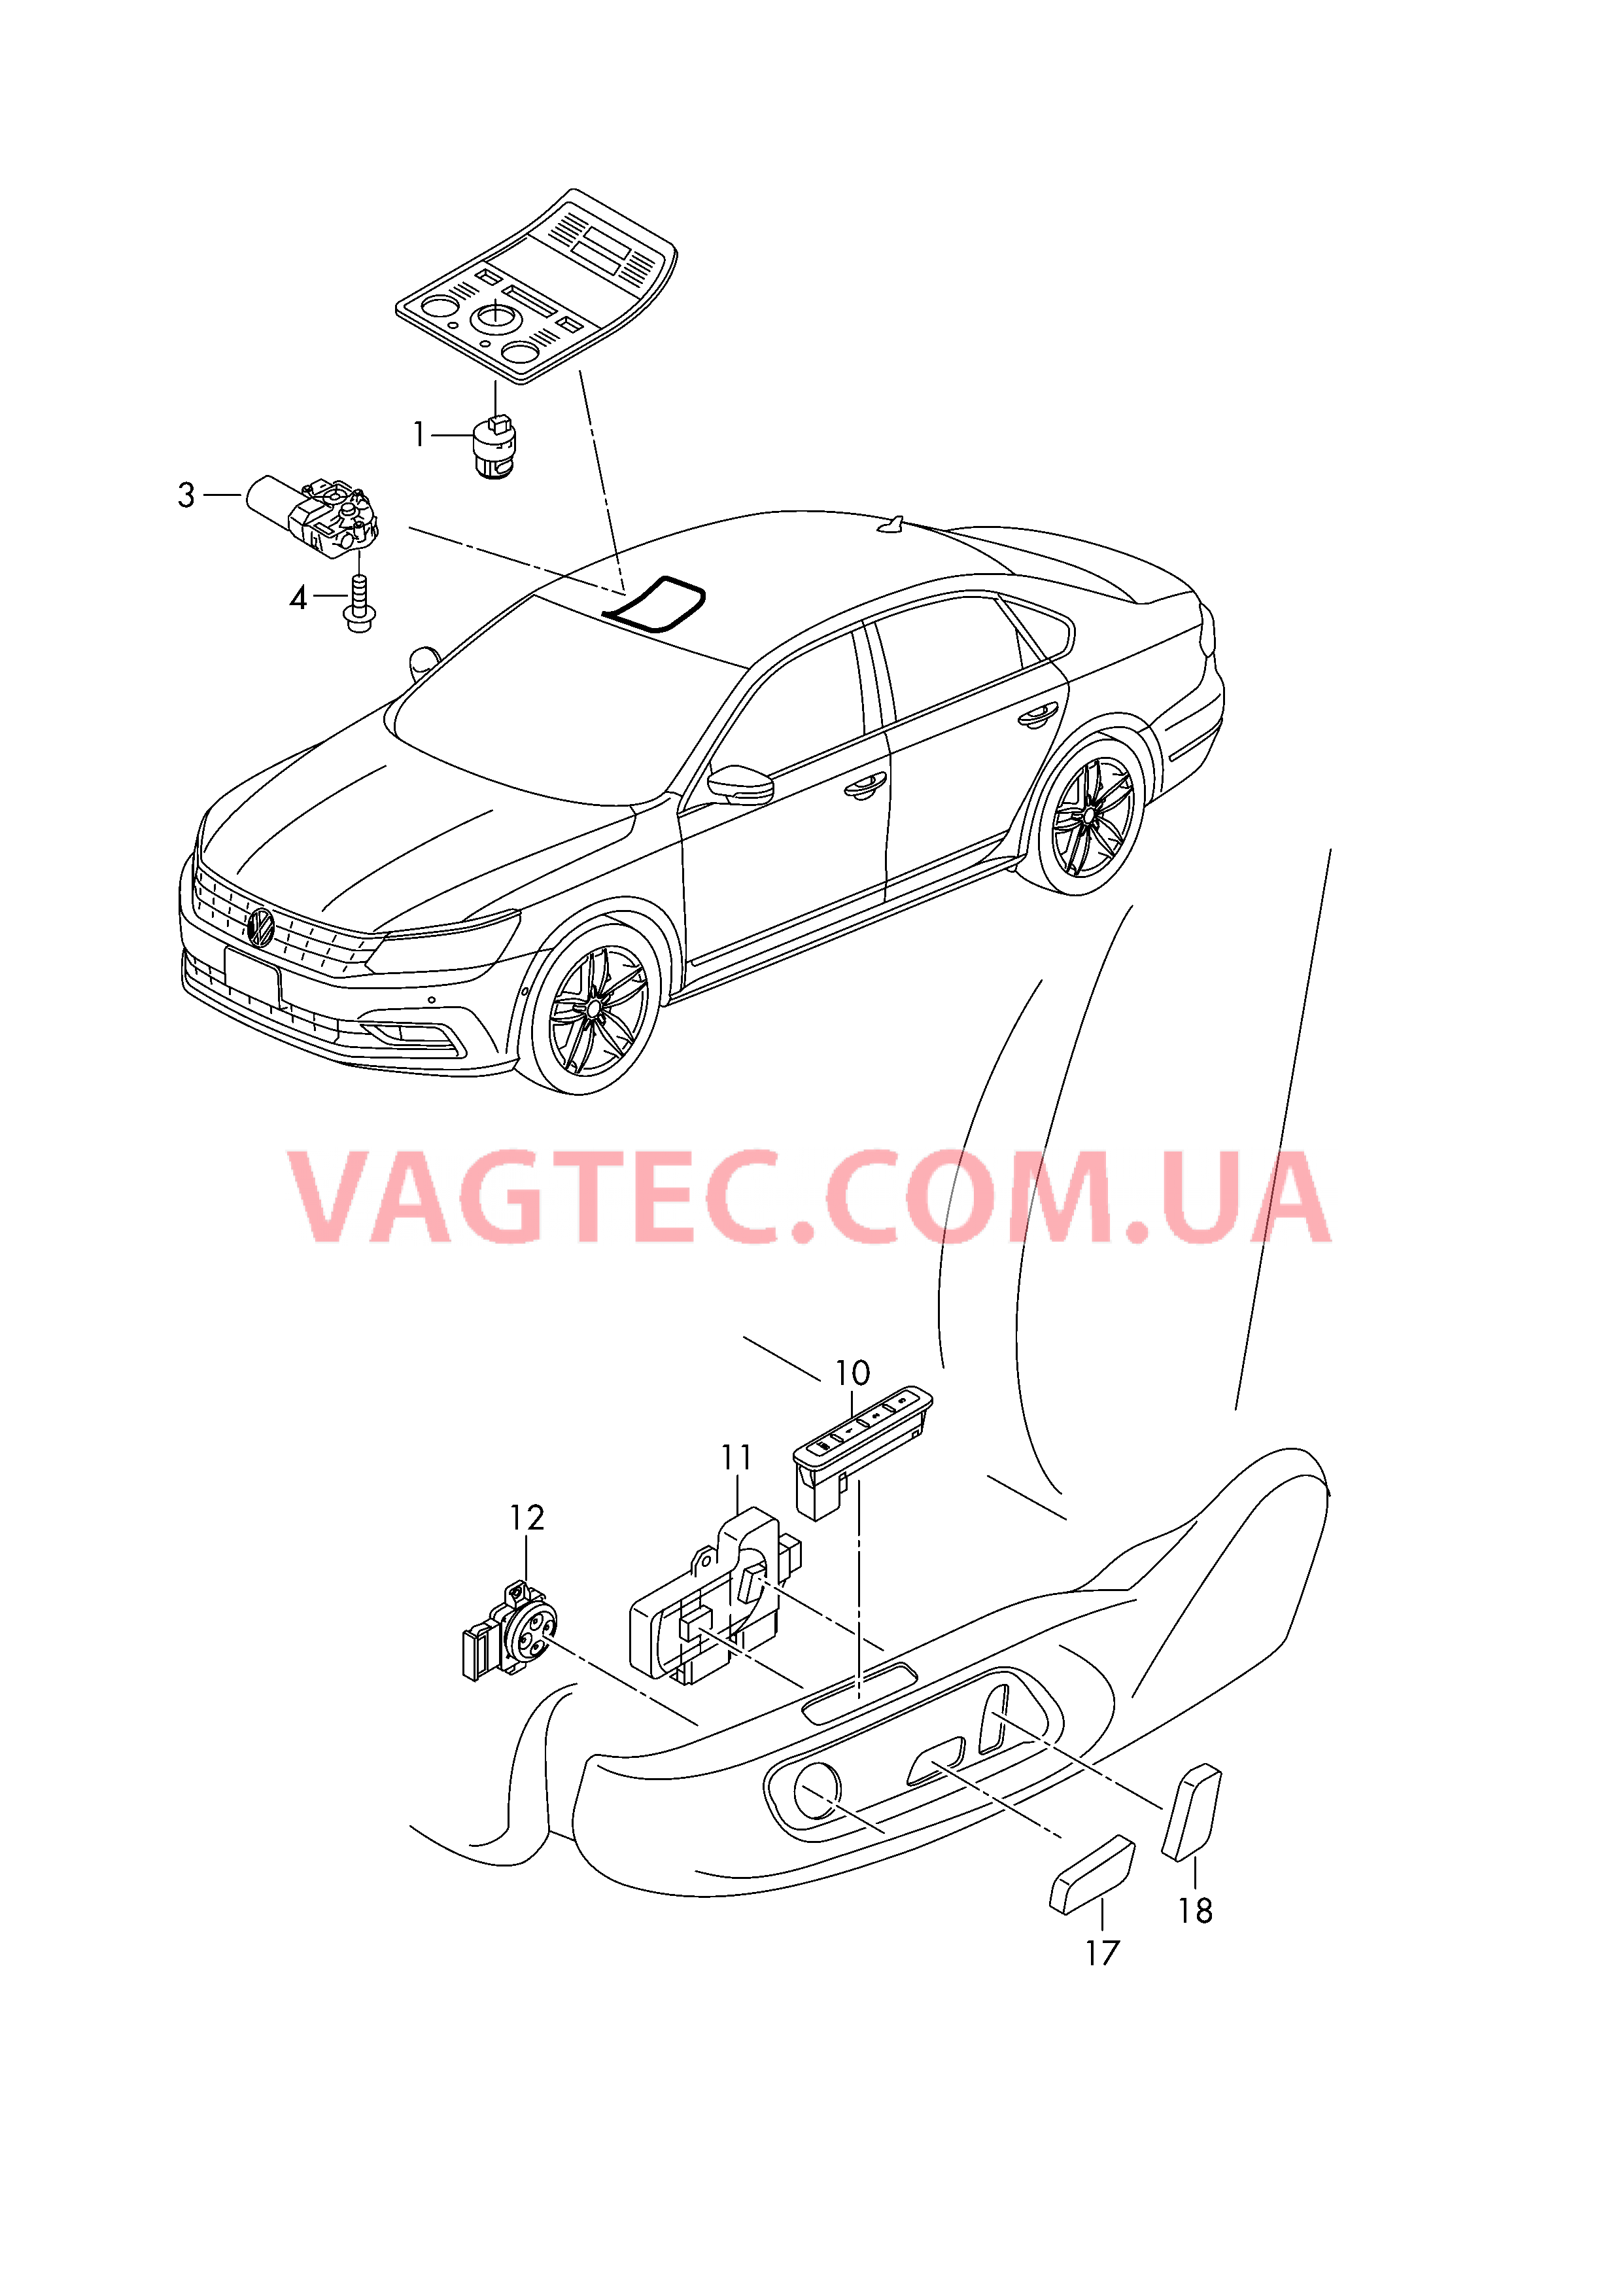 Выключатель на крыше Мотор привода люка Выкл-тель регулир-ки положения сиденья и спинки  для VOLKSWAGEN Passat 2018